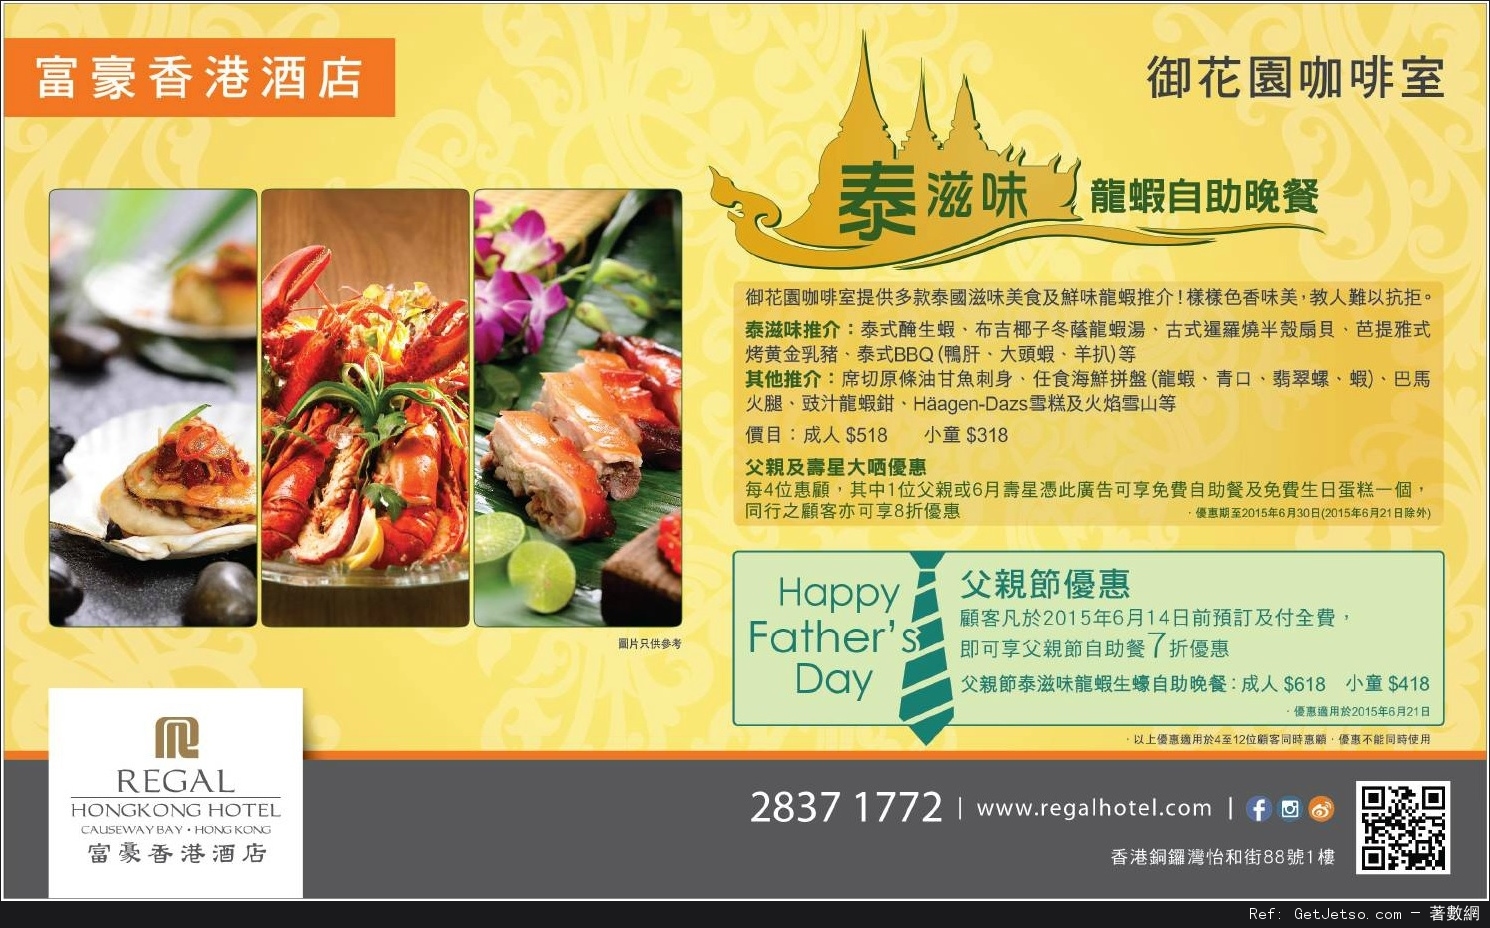 富豪香港酒店父親節自助餐7折預訂優惠(至15年6月14日)圖片1